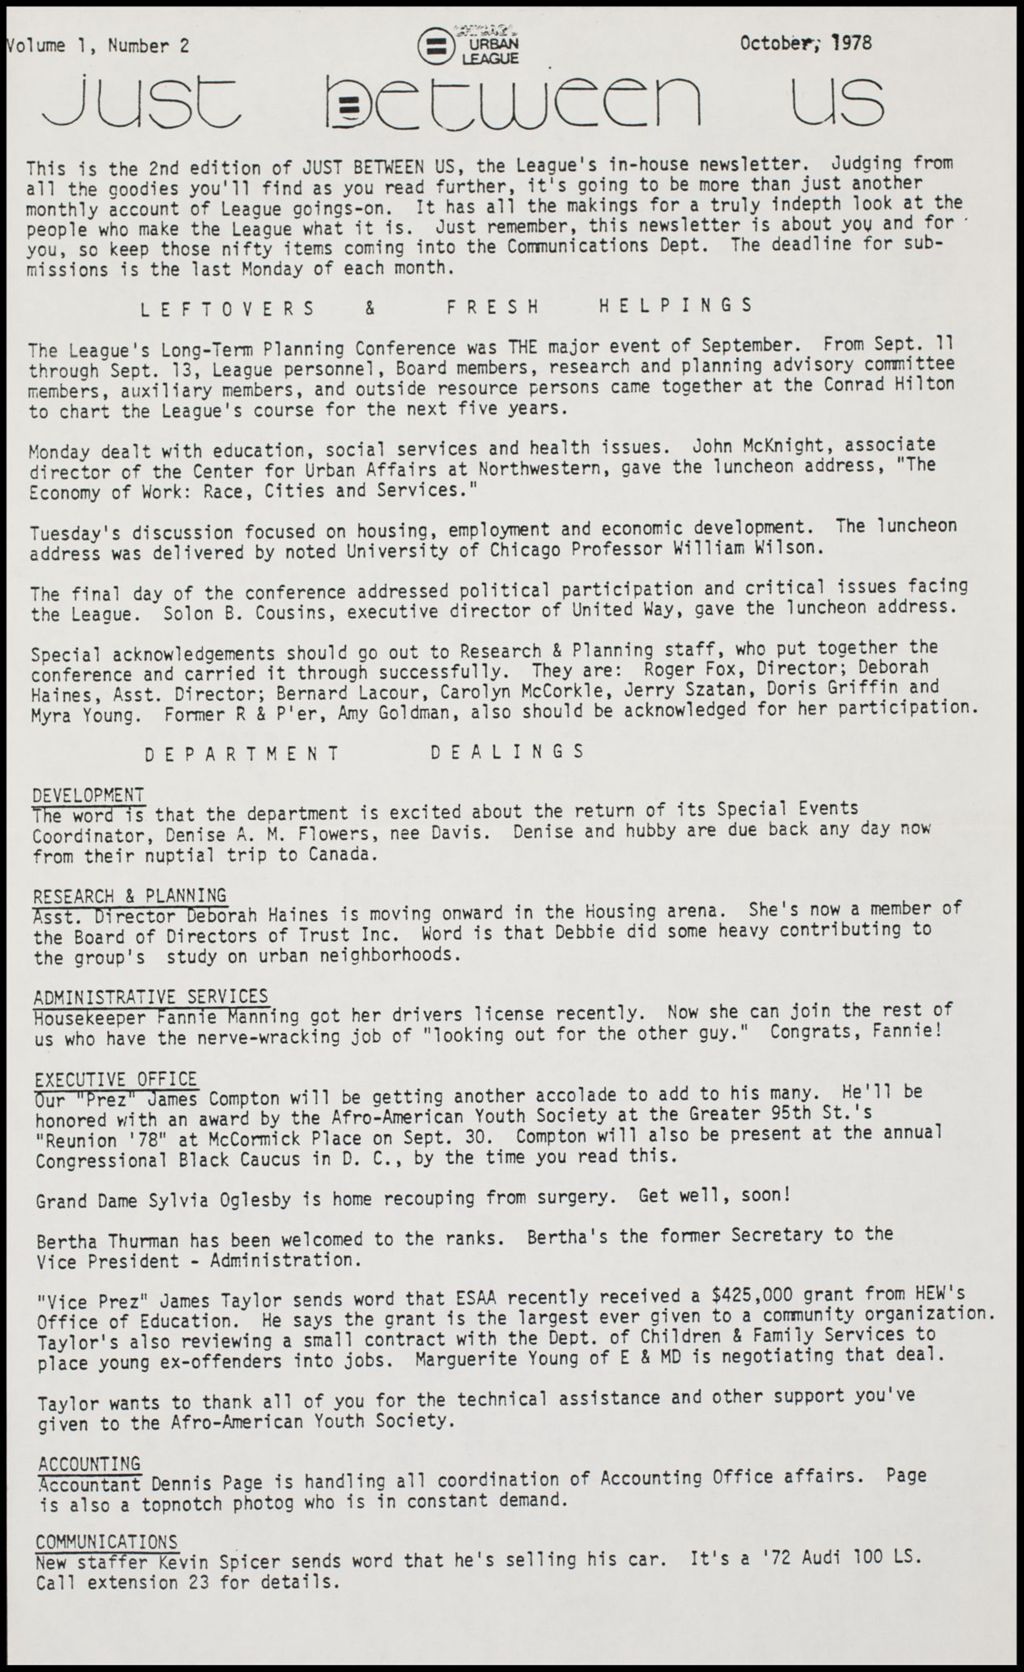 Miniature of CUL Employee Newsletter "Just Between Us", 1978-1979 (Folder IV-733)